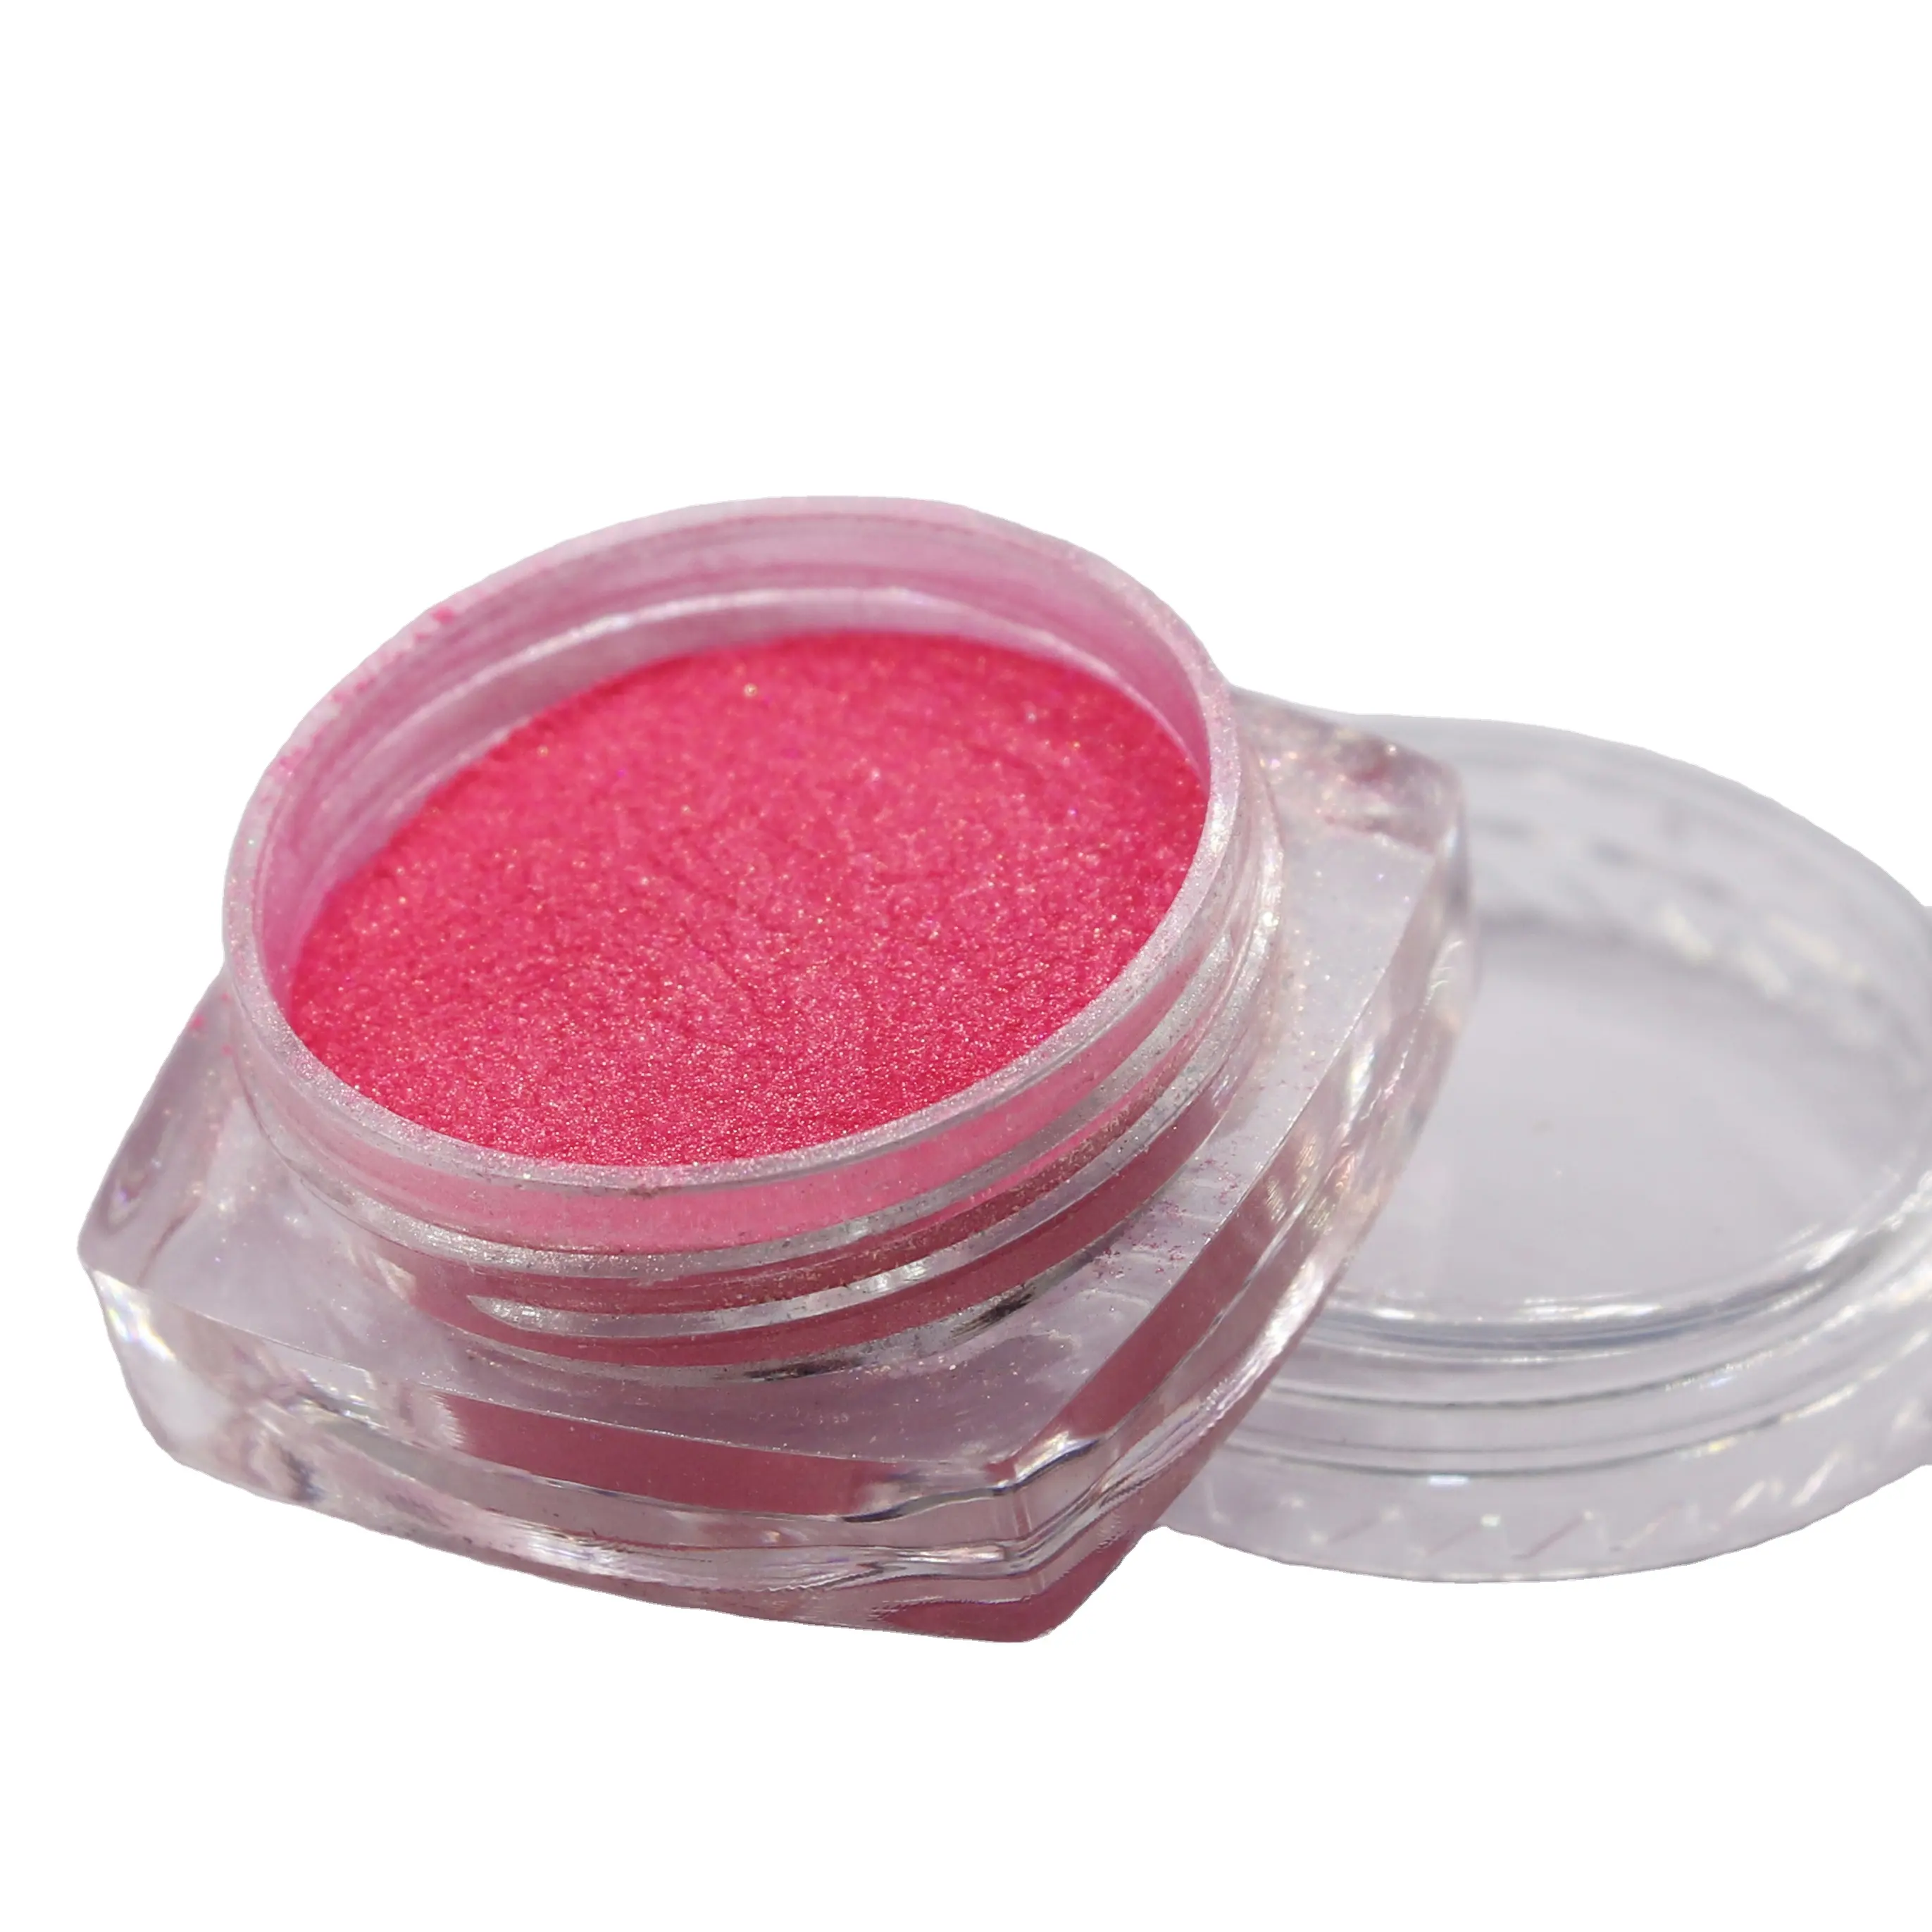 Bas prix pigment de perle de couleur de fabrication de savon rose poudre de mica